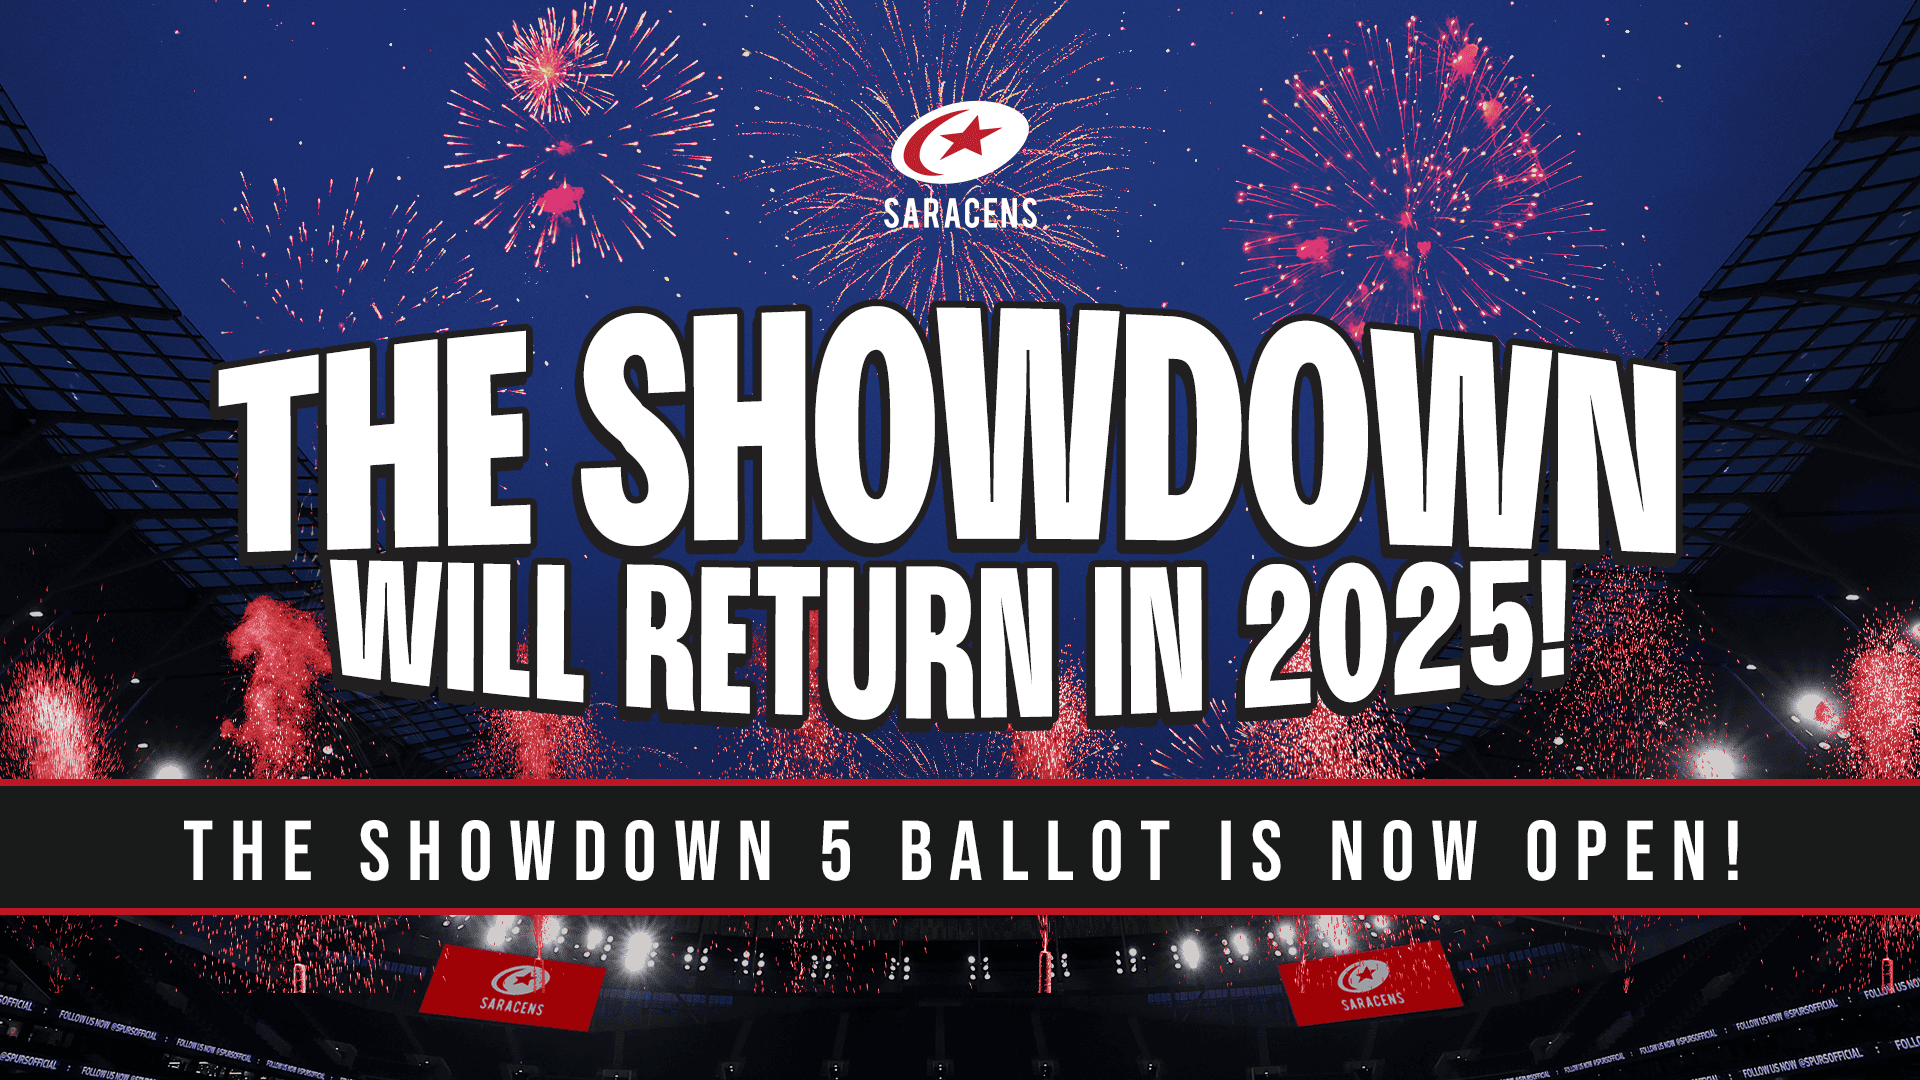 The Showdown will return in 2025!